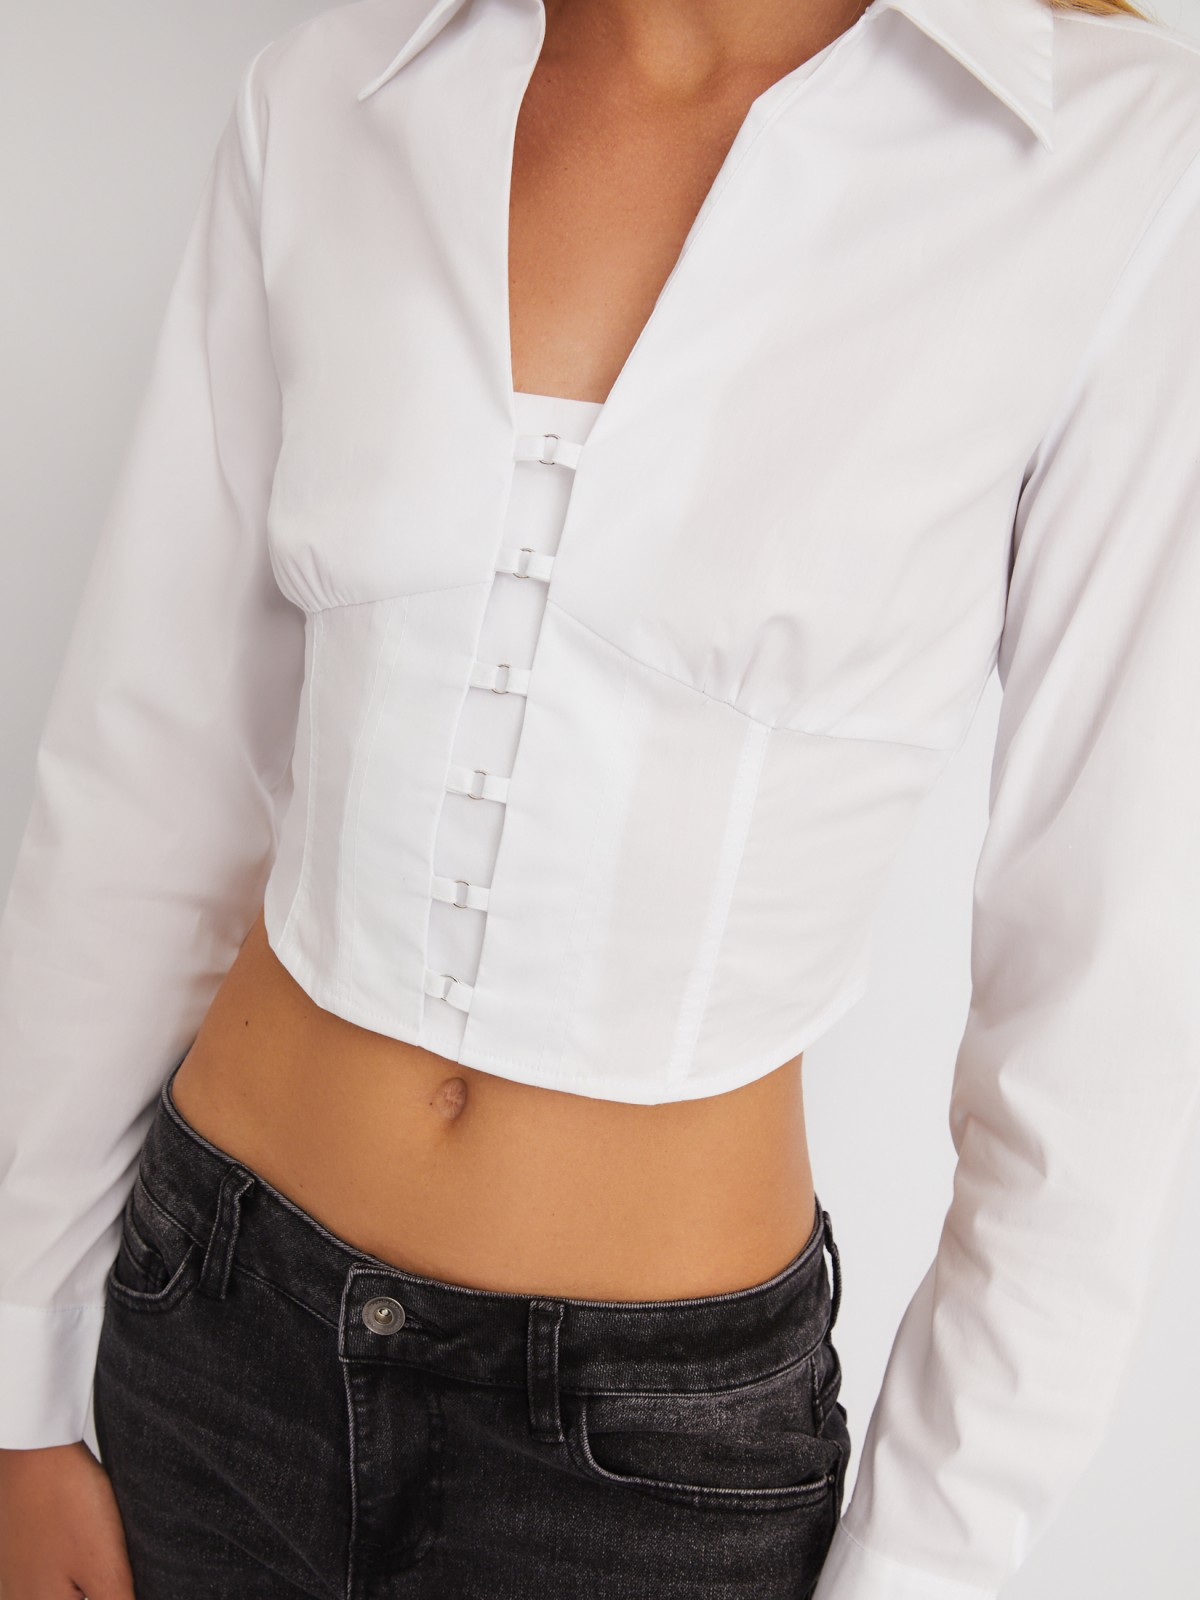 Укороченный топ-рубашка с имитацией корсета zolla 024111159271, цвет белый, размер XS - фото 4